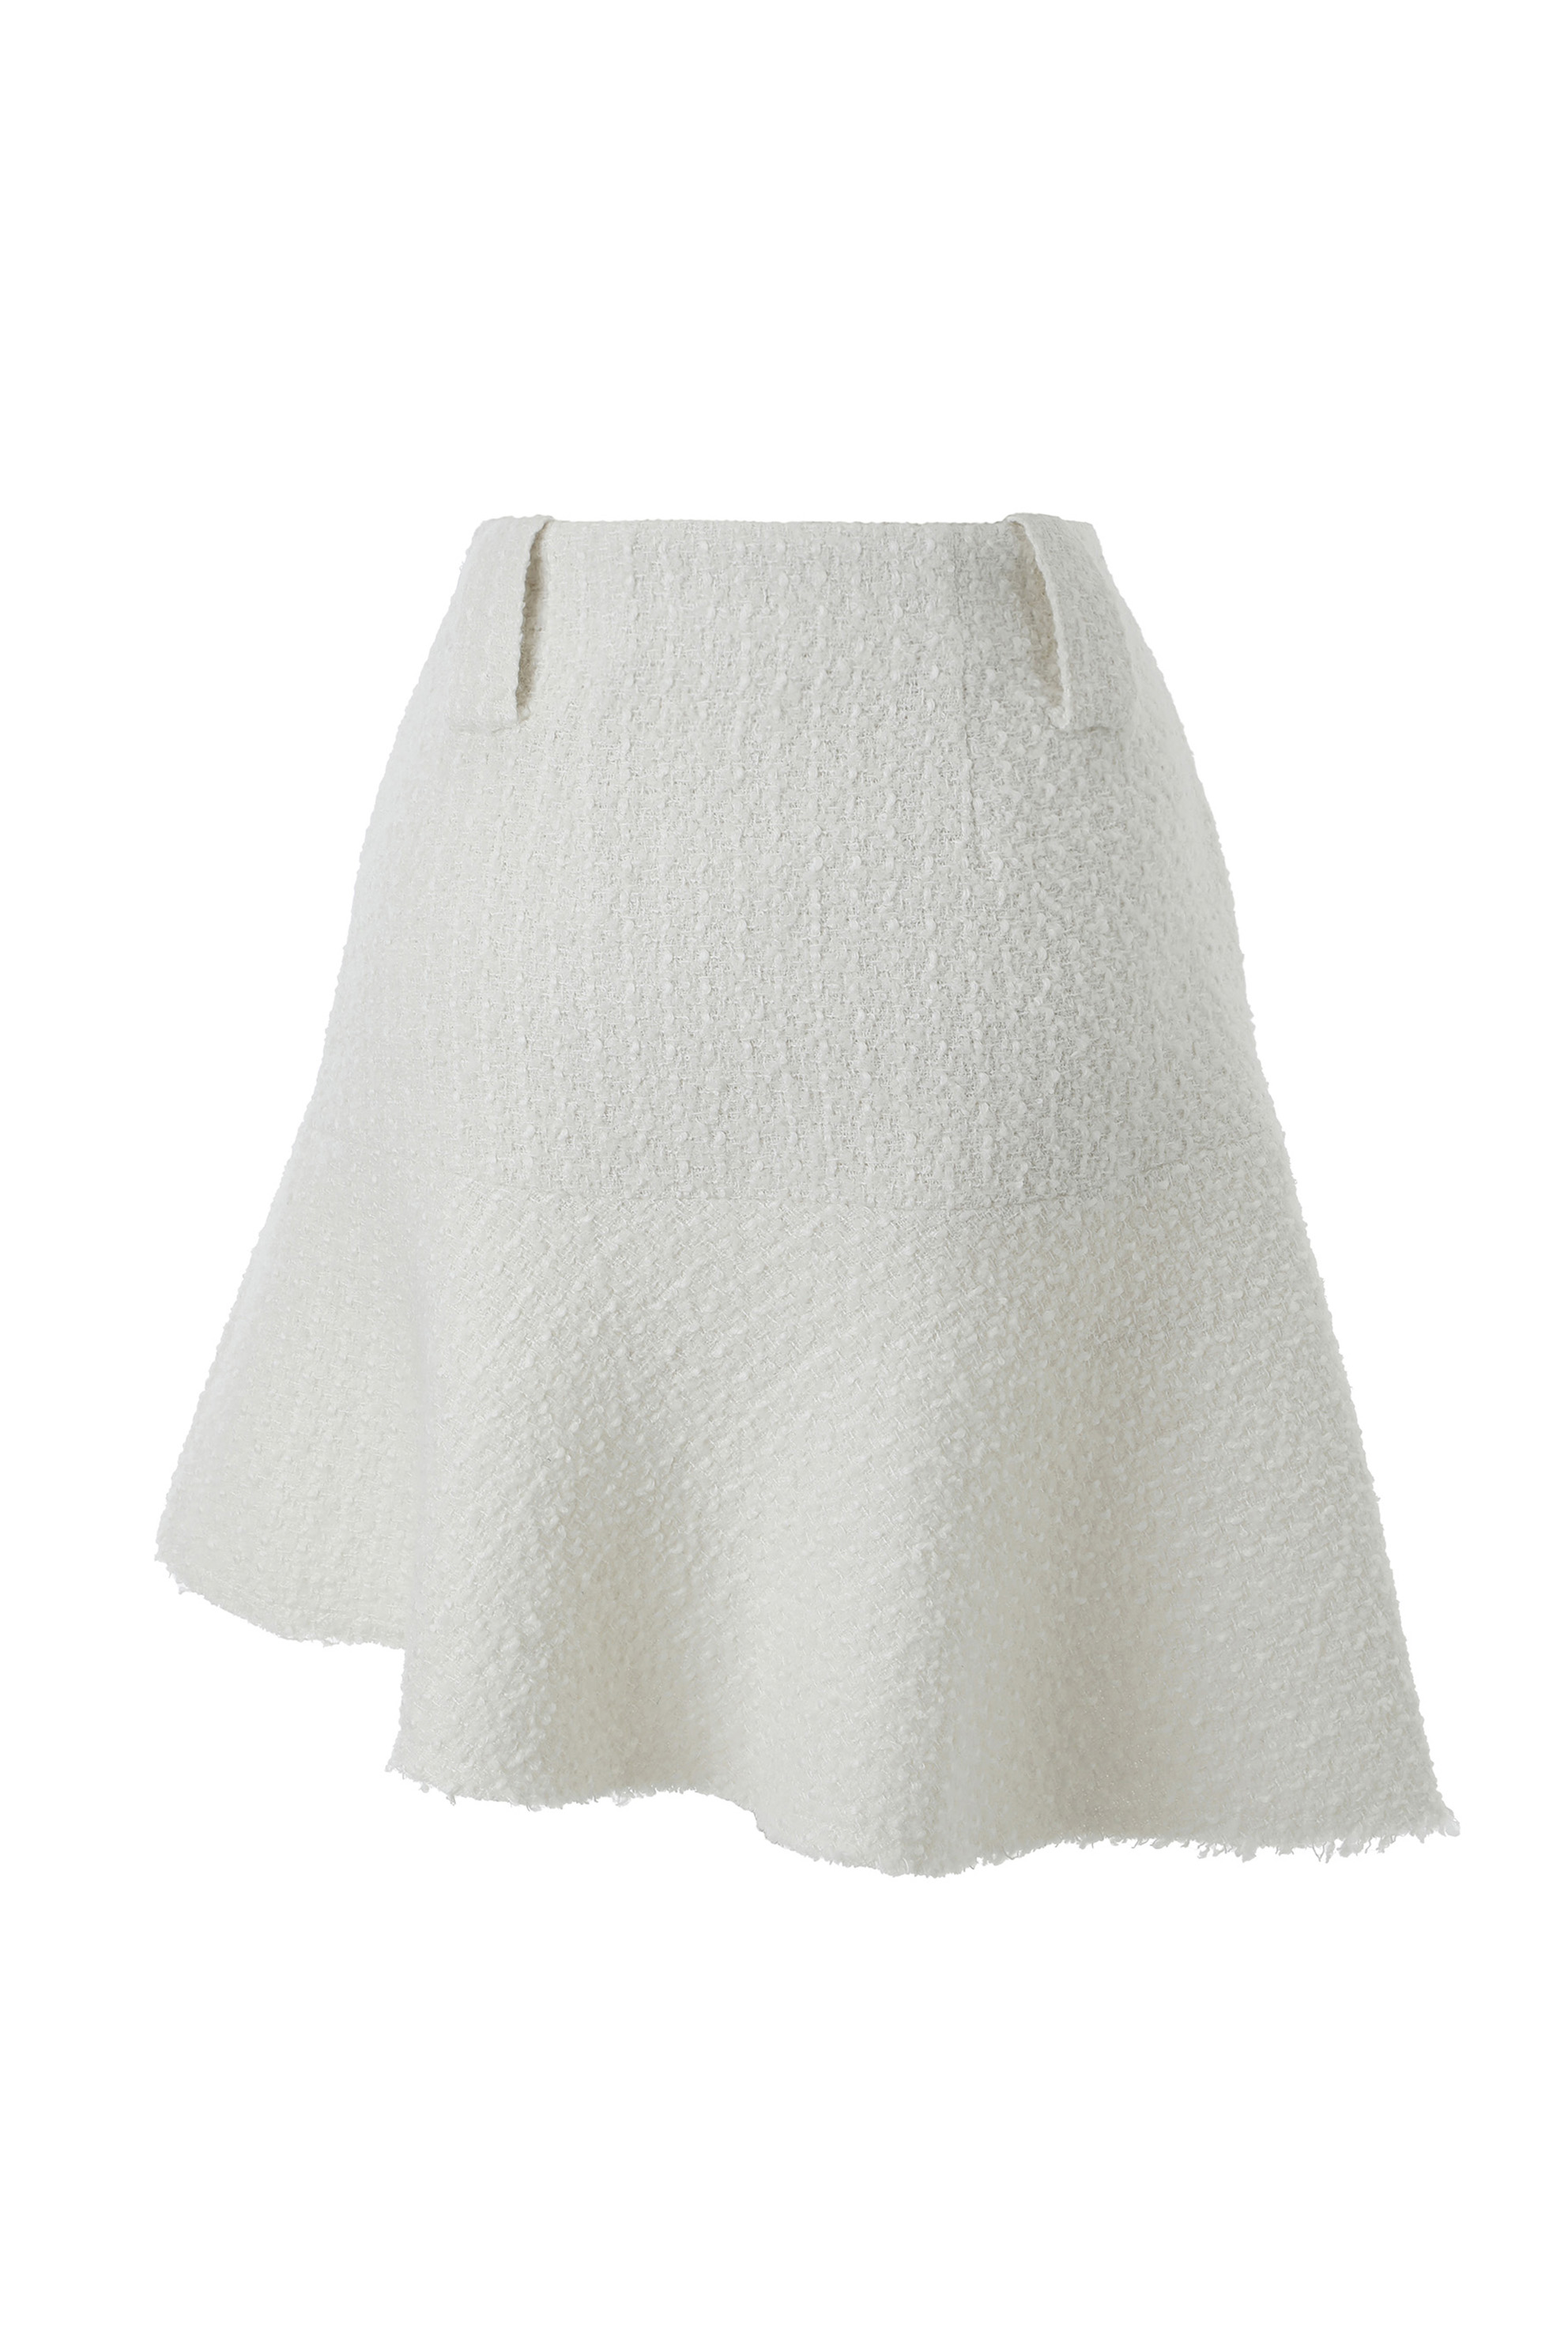 Lily tweed skirt